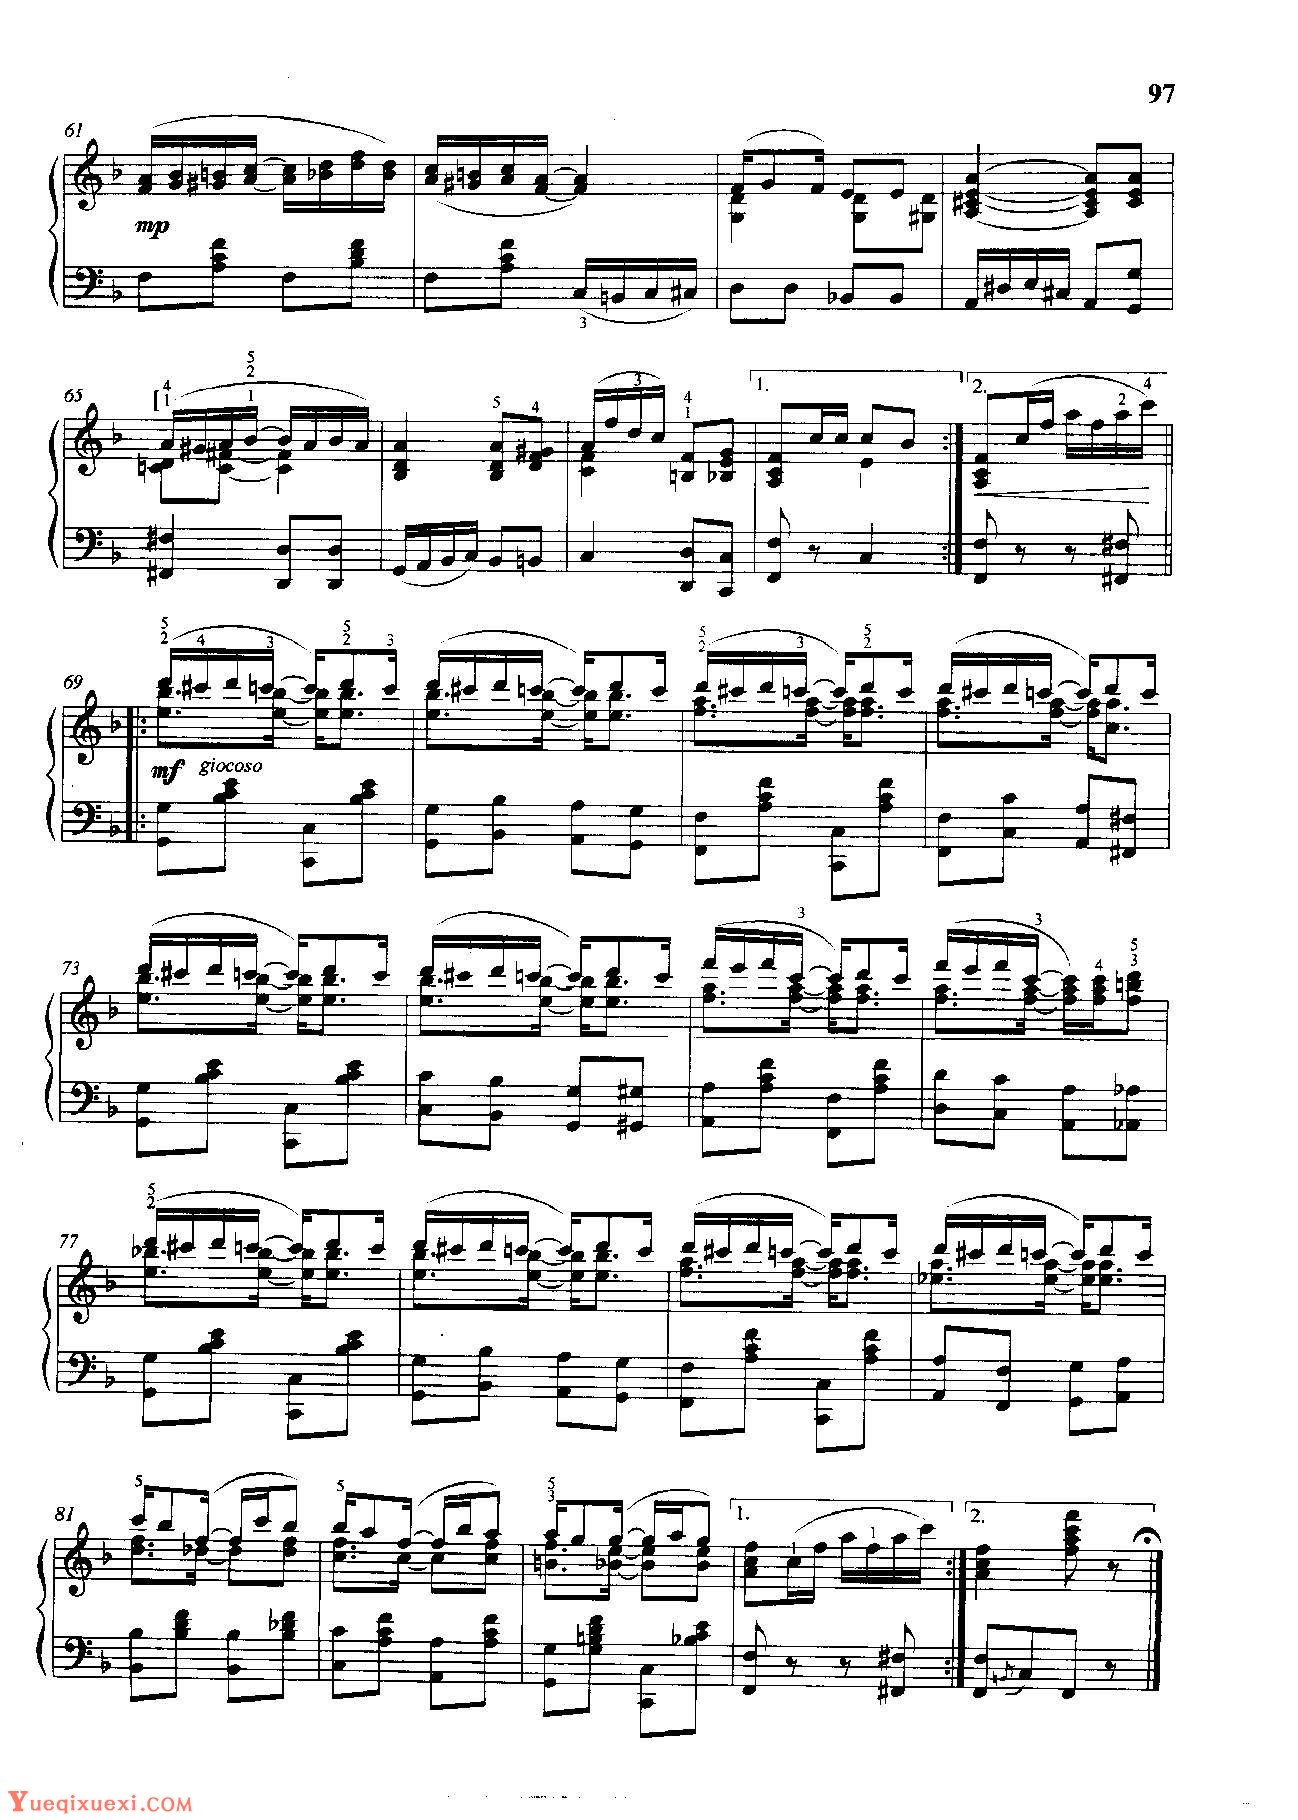 雷格泰姆钢琴乐谱《玫瑰花叶雷格》雷格泰姆之王斯科特·乔普林